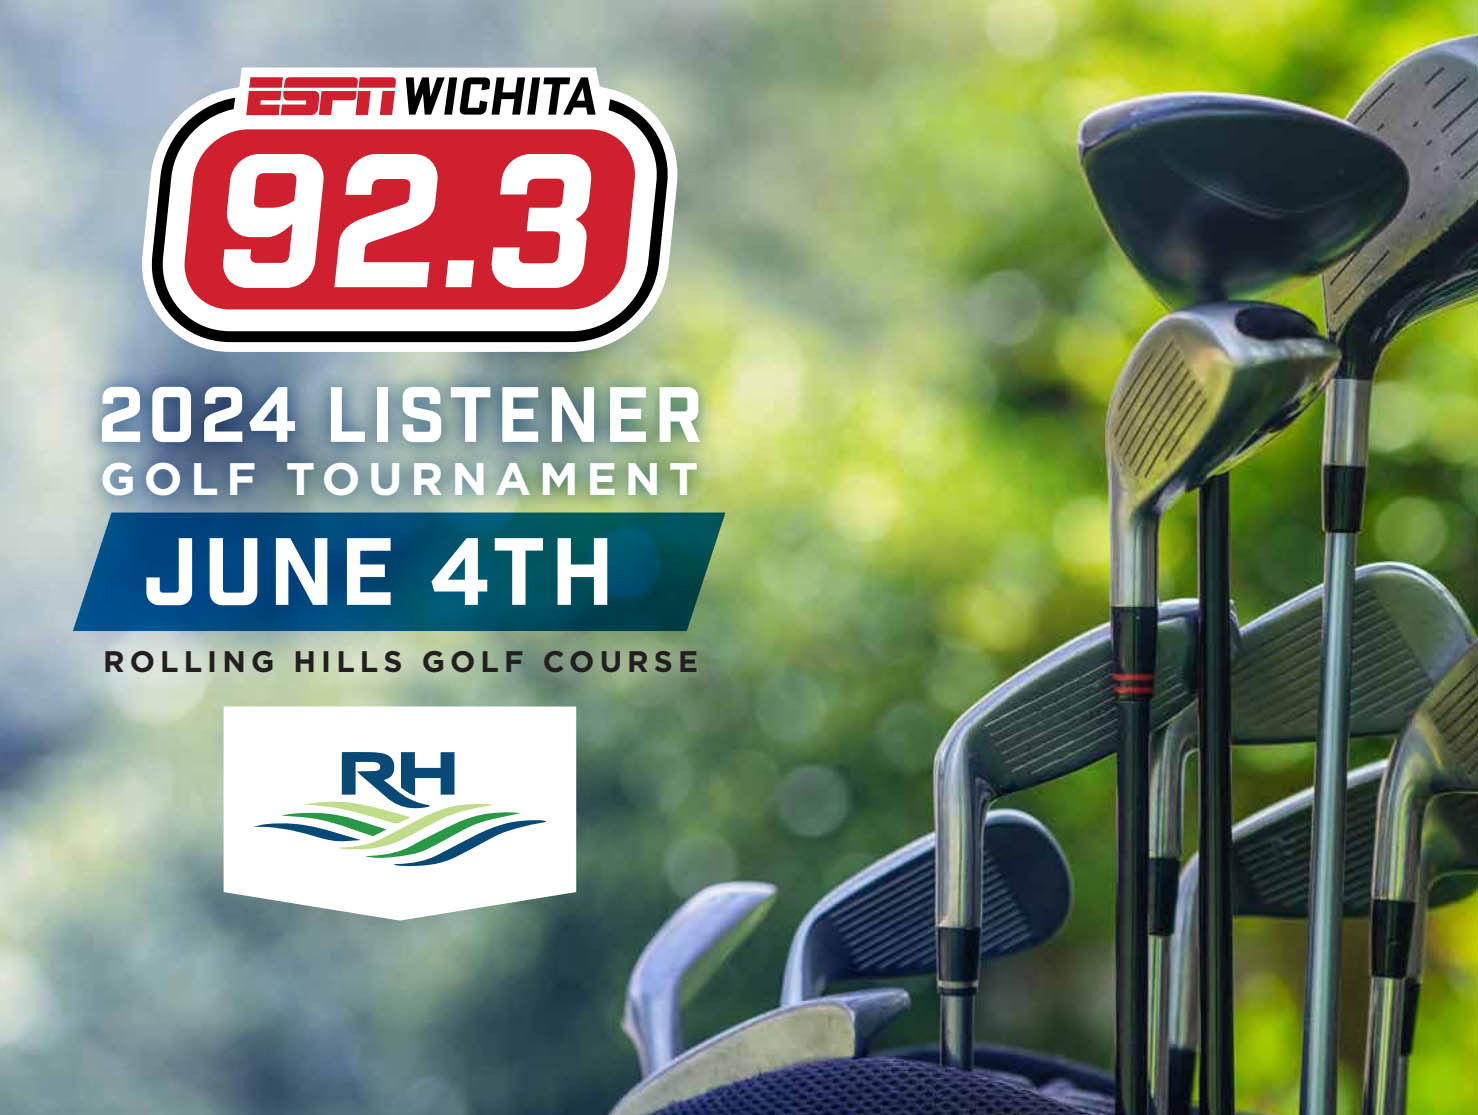 ESPN Wichita 92.3 Golf Tournament